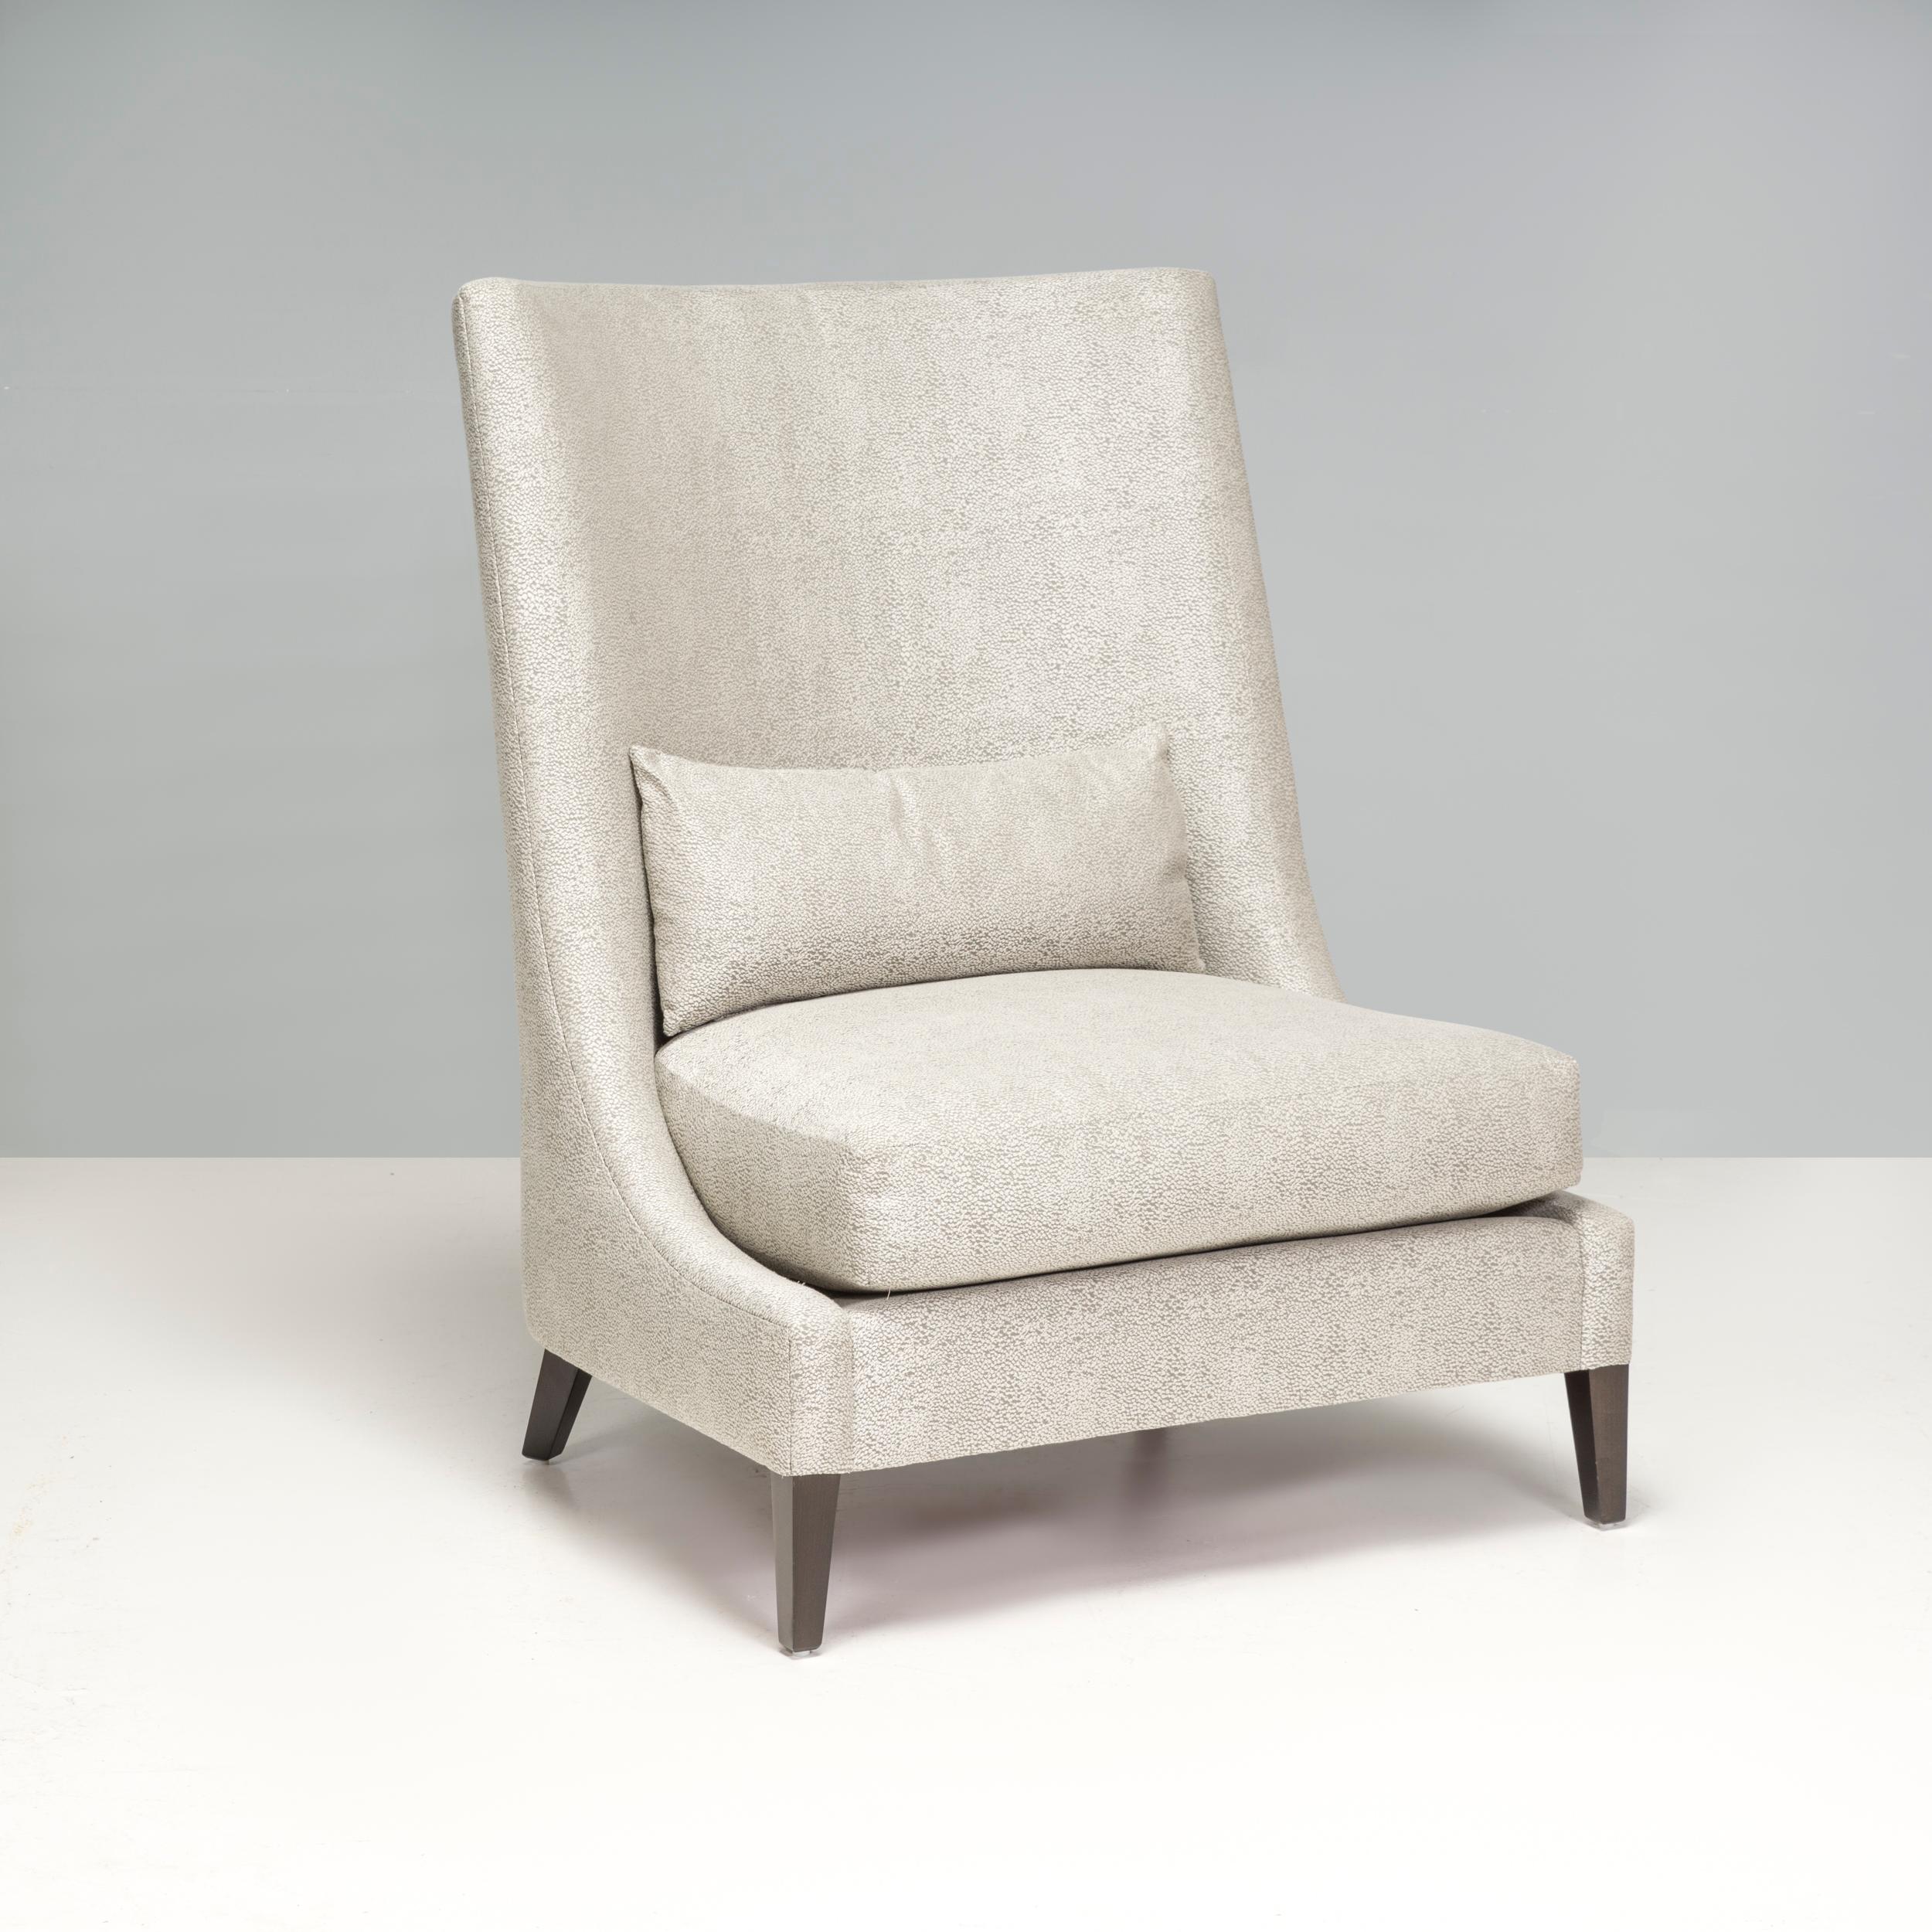 Der hellgraue Sessel mit hoher Rückenlehne besticht durch sein Design, das jeden Wohn- oder Schlafbereich aufwertet. 

Die neutrale Farbpalette lässt sich gut mit einer Reihe von Einrichtungsstilen in Einklang bringen. Die Rückenlehne des Stuhls